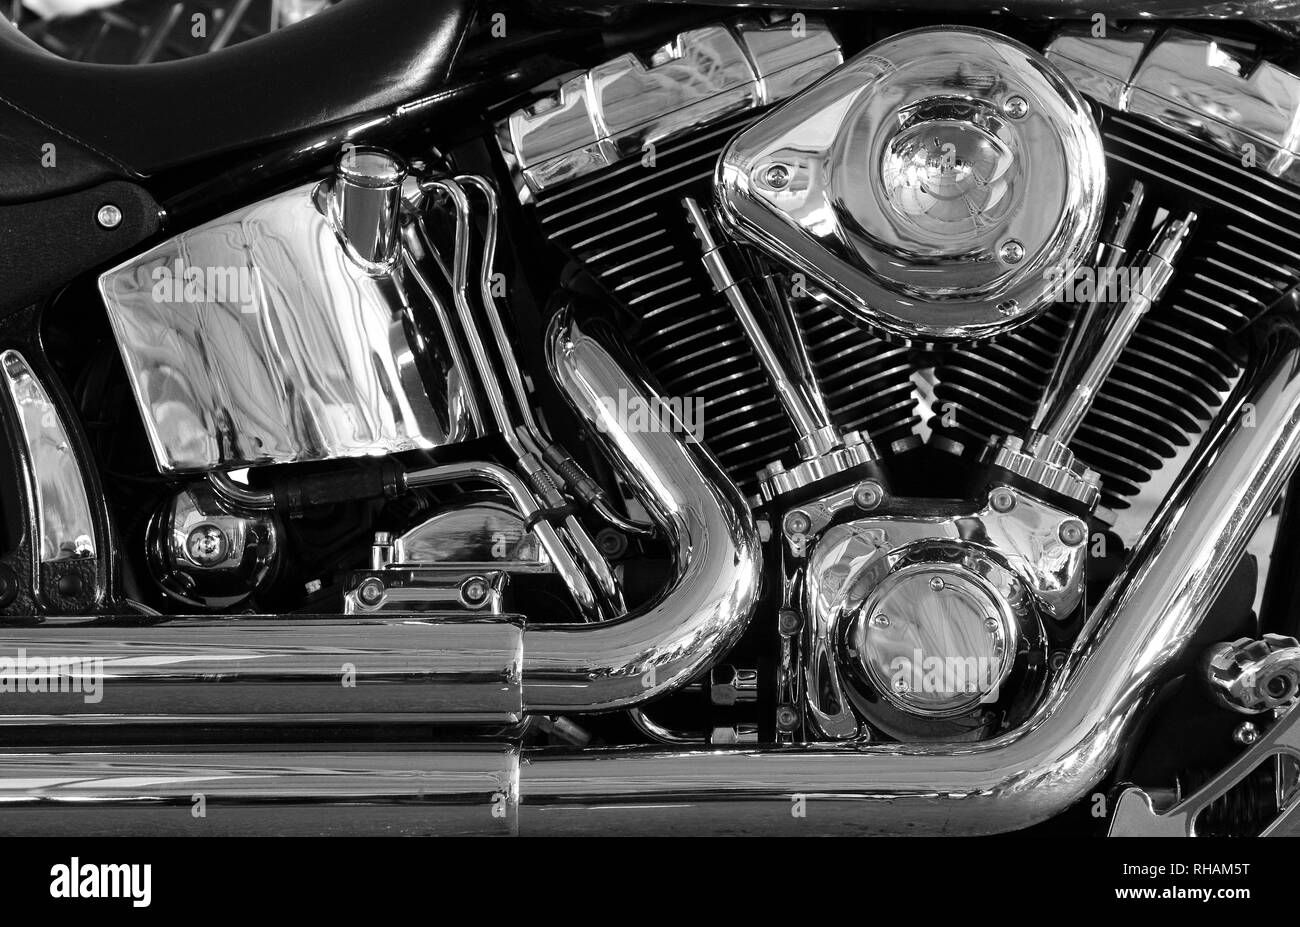 Le chromage v-type détaillé moteur moto Photo Stock - Alamy